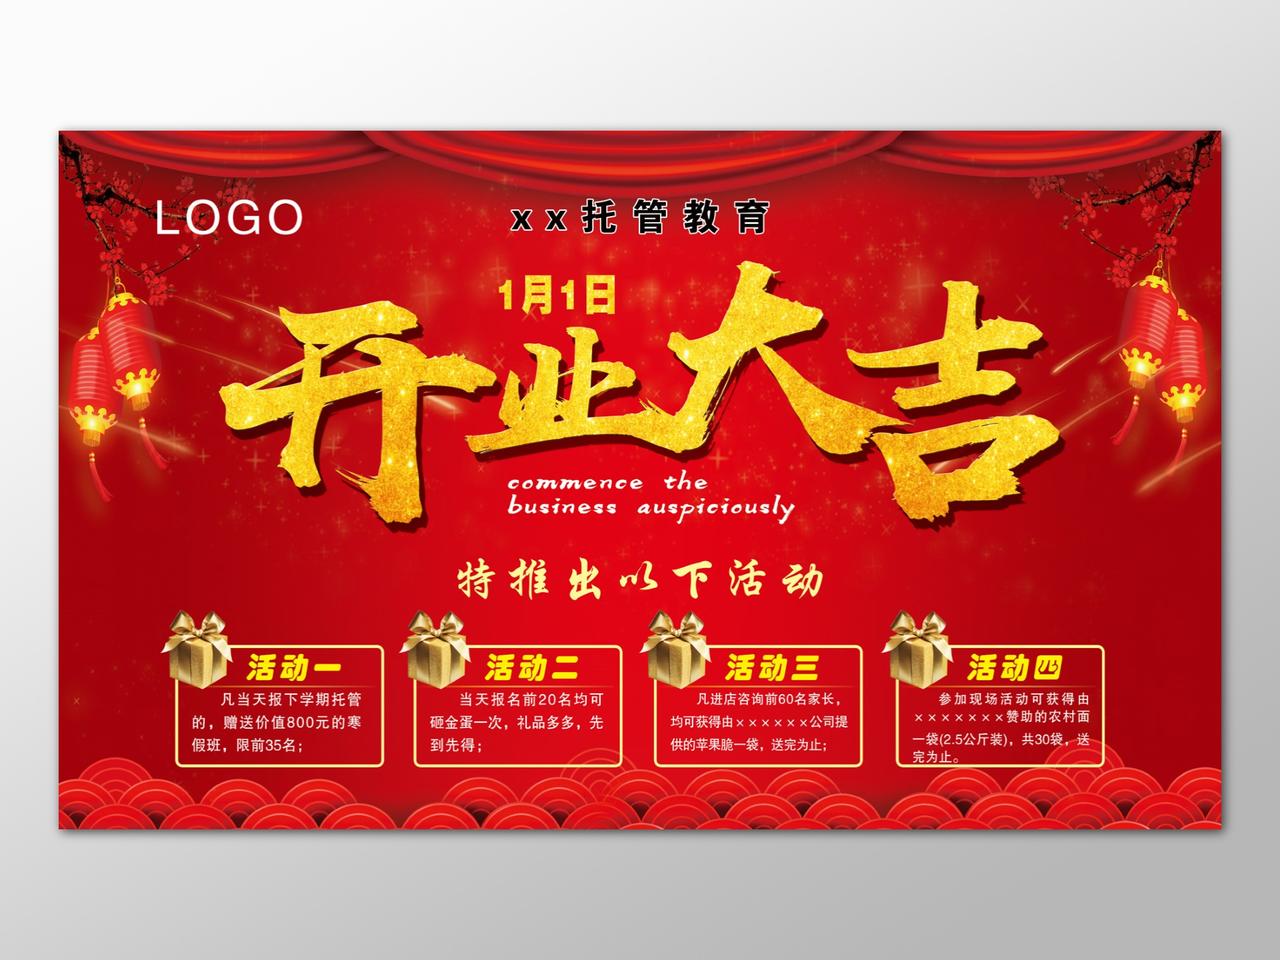 促销活动好礼酬宾红色中国风鎏金开业大吉海报广告设计